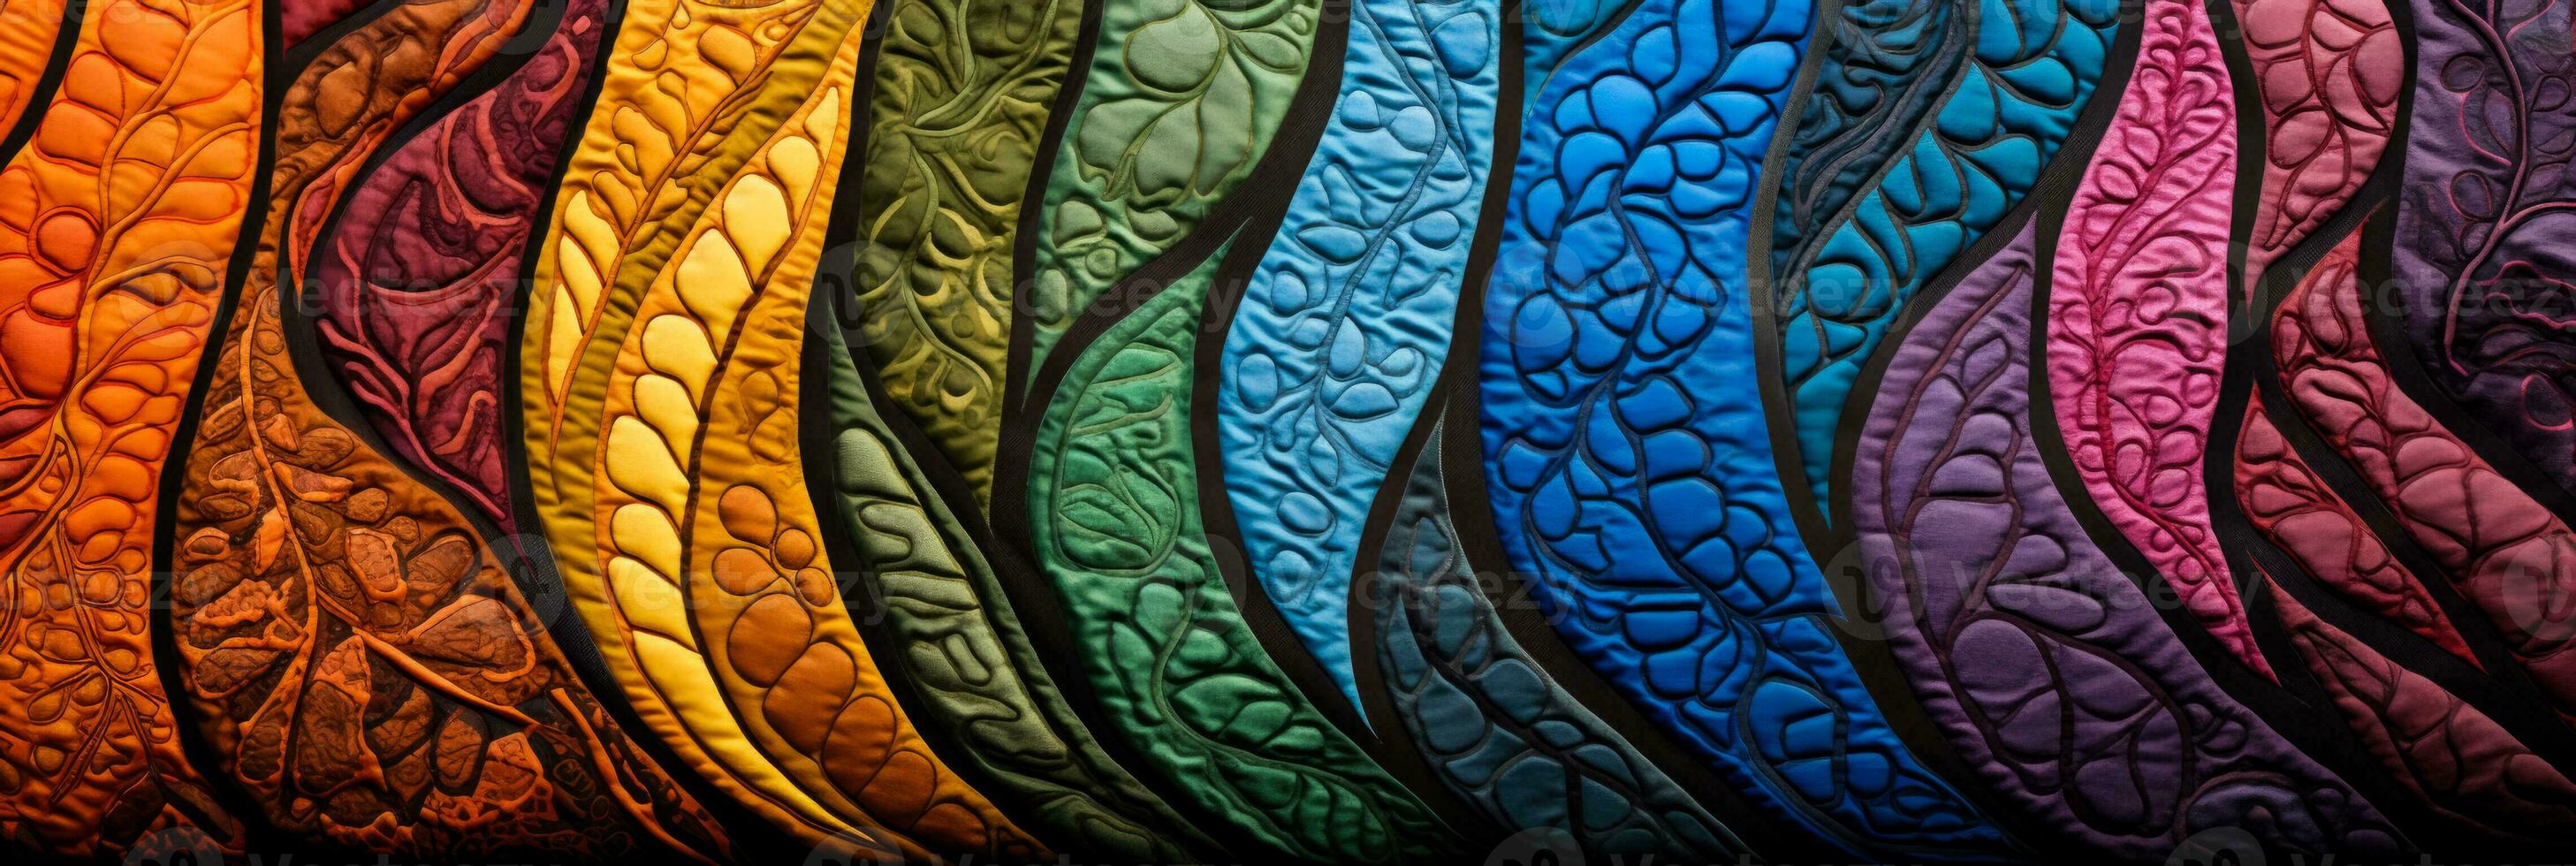 mano dibujado batik tela texturas capturar orgánico simetría y vibrante colorante detalles foto